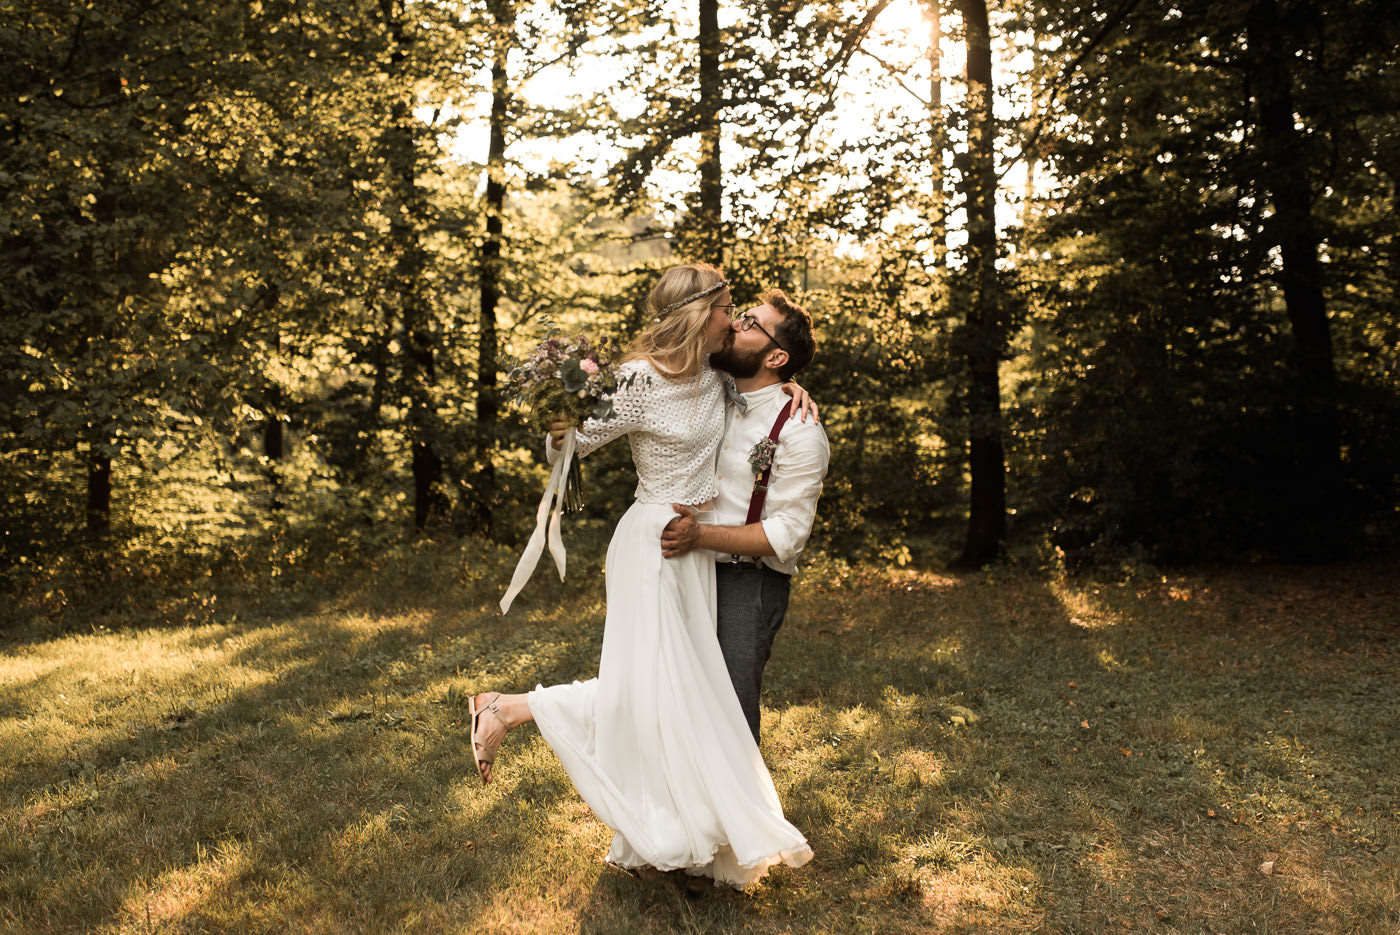 Braut springt Mann in die Arme und küssen sich am Hochzeitstag im Wald bei Sonne auf grüner Wiese